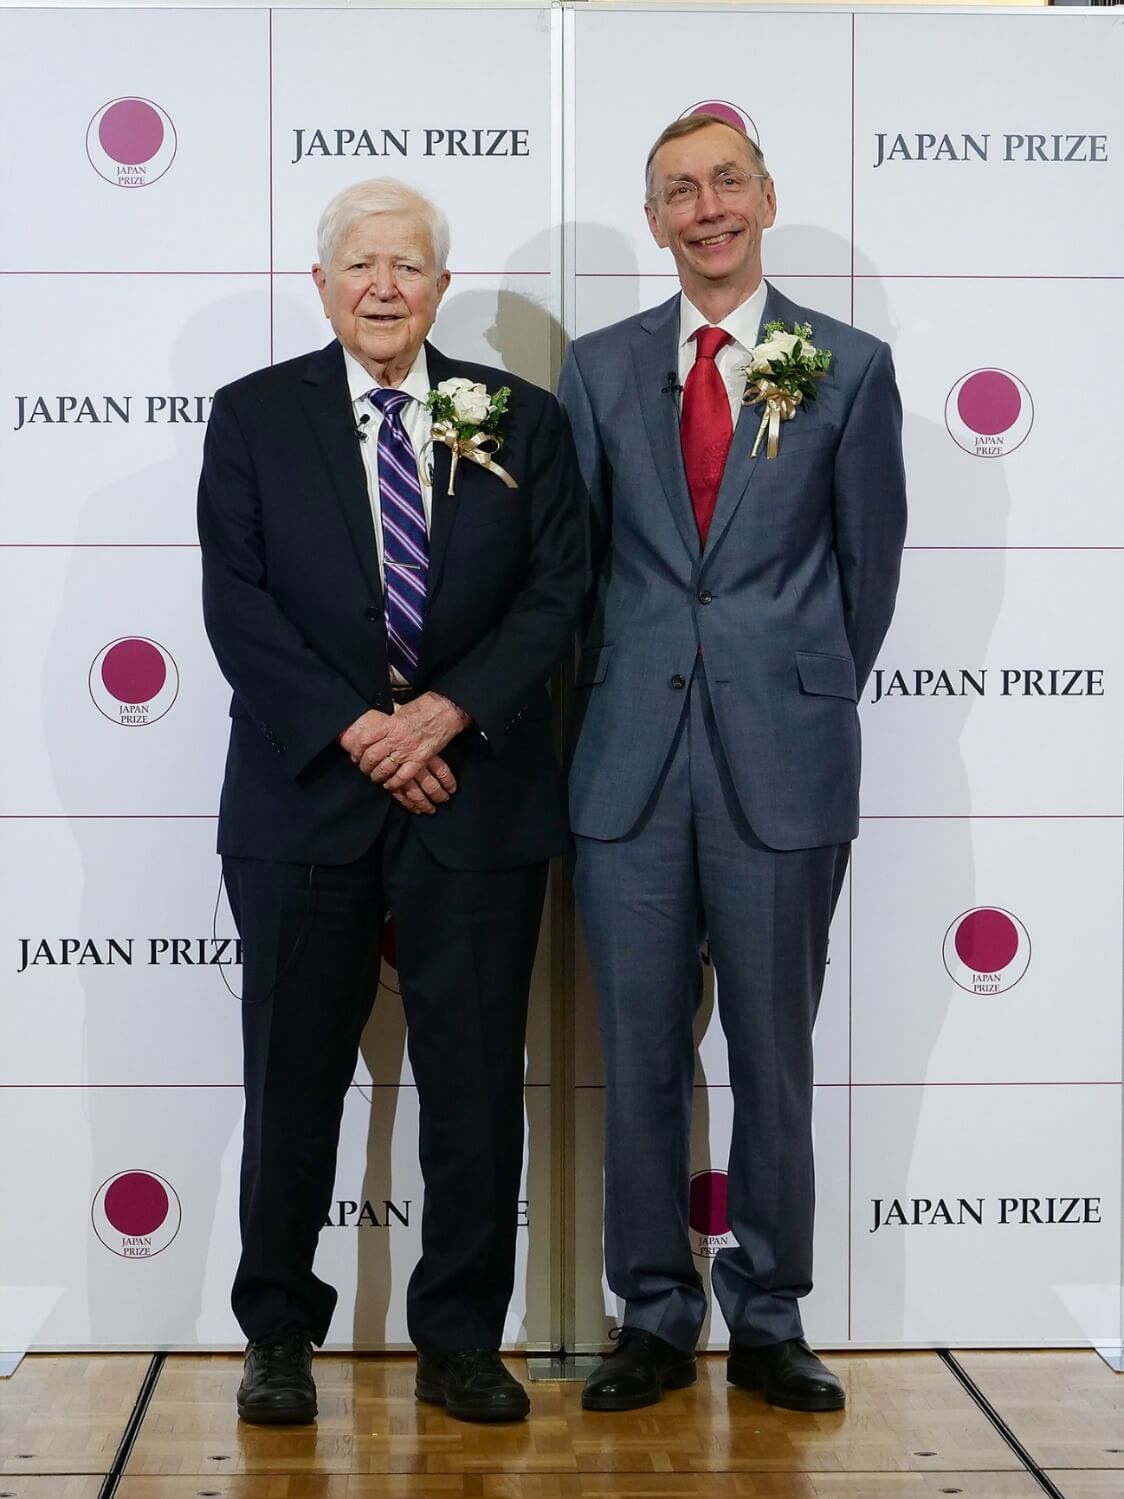 2020年日本国际奖决定授予盖勒和帕博两博士